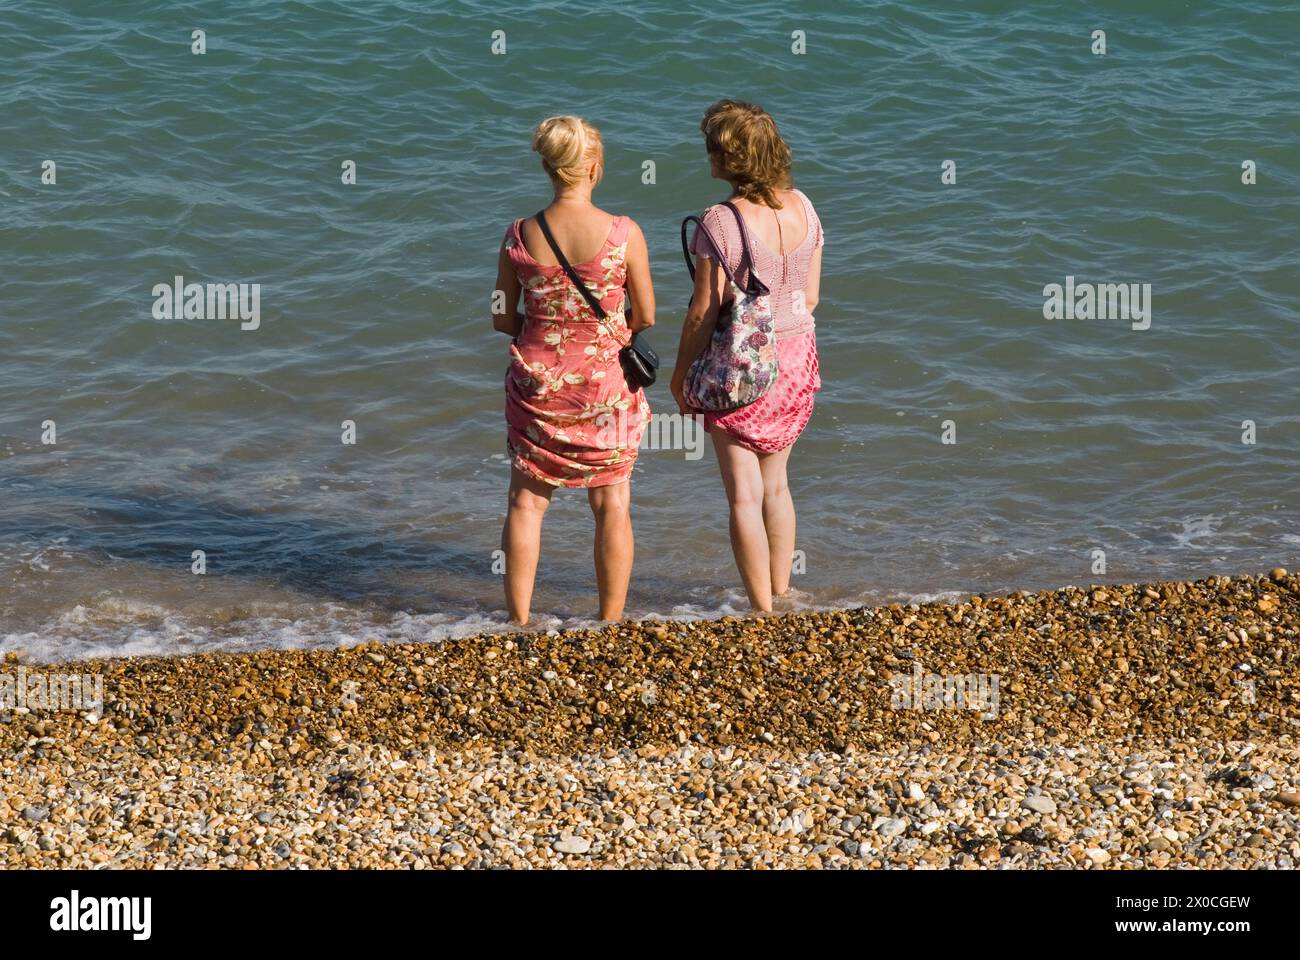 Le donne amiche Eastbourne Beach 2 donne che chiacchierano, si sono tolte le scarpe e si trovano in riva al mare. Hanno indossato i loro abiti estivi per evitare che si bagnino. Eastbourne, East Sussex, Inghilterra 28 agosto 2013. 2010 UK HOMER SYKES Foto Stock